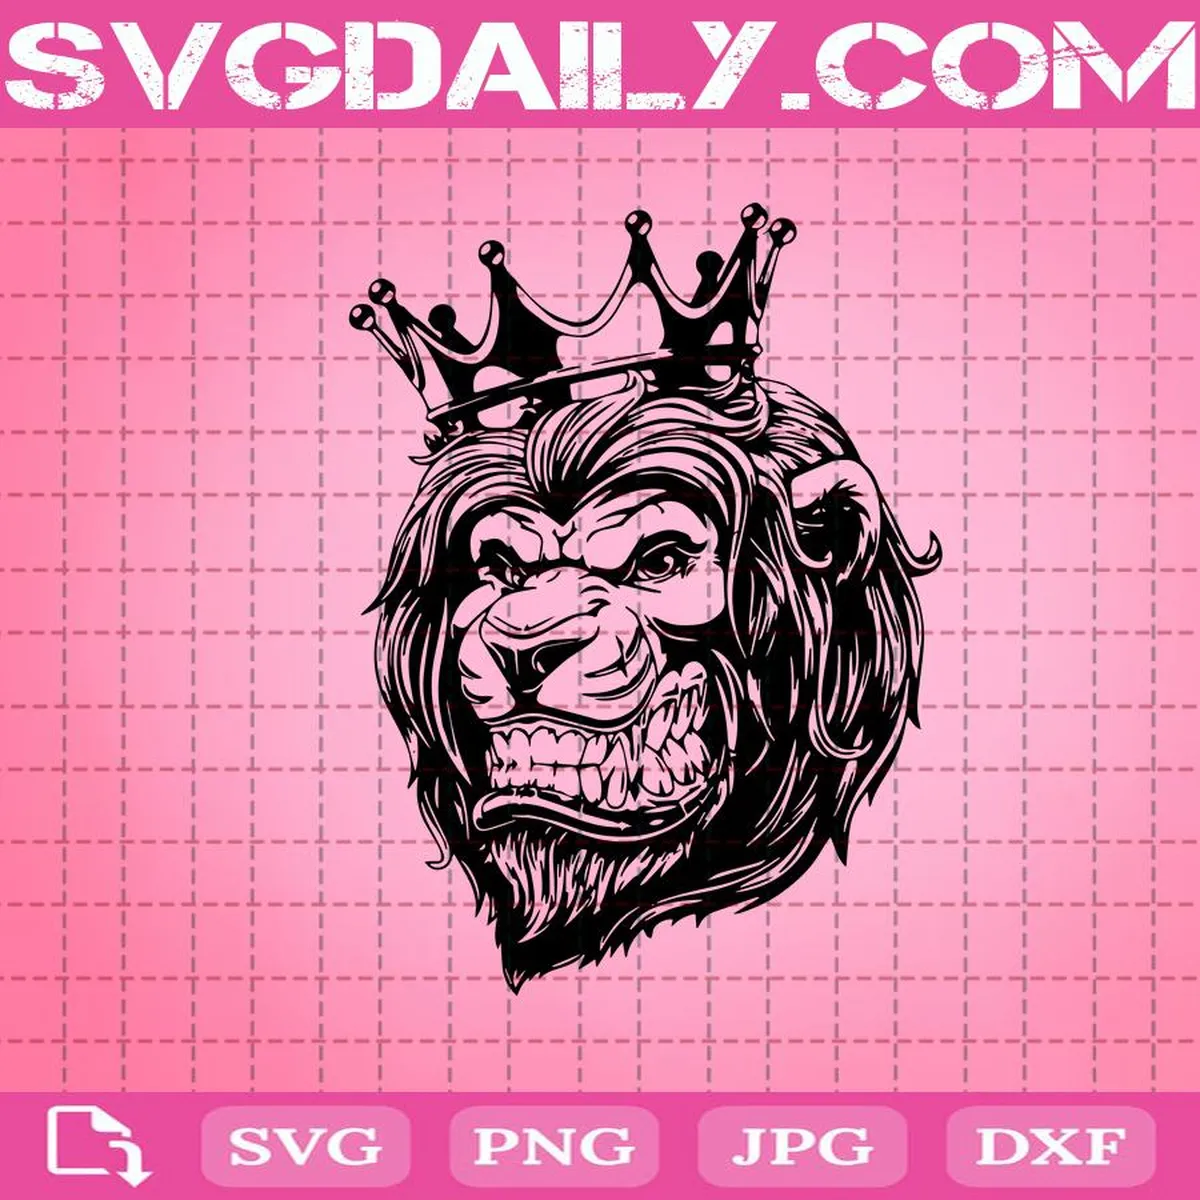 Lion With Crown Svg, Lion Crown Svg, Lion Svg, Crown Svg, King Lion Svg, Royal Lion In Crown Svg, Lion's Head Svg